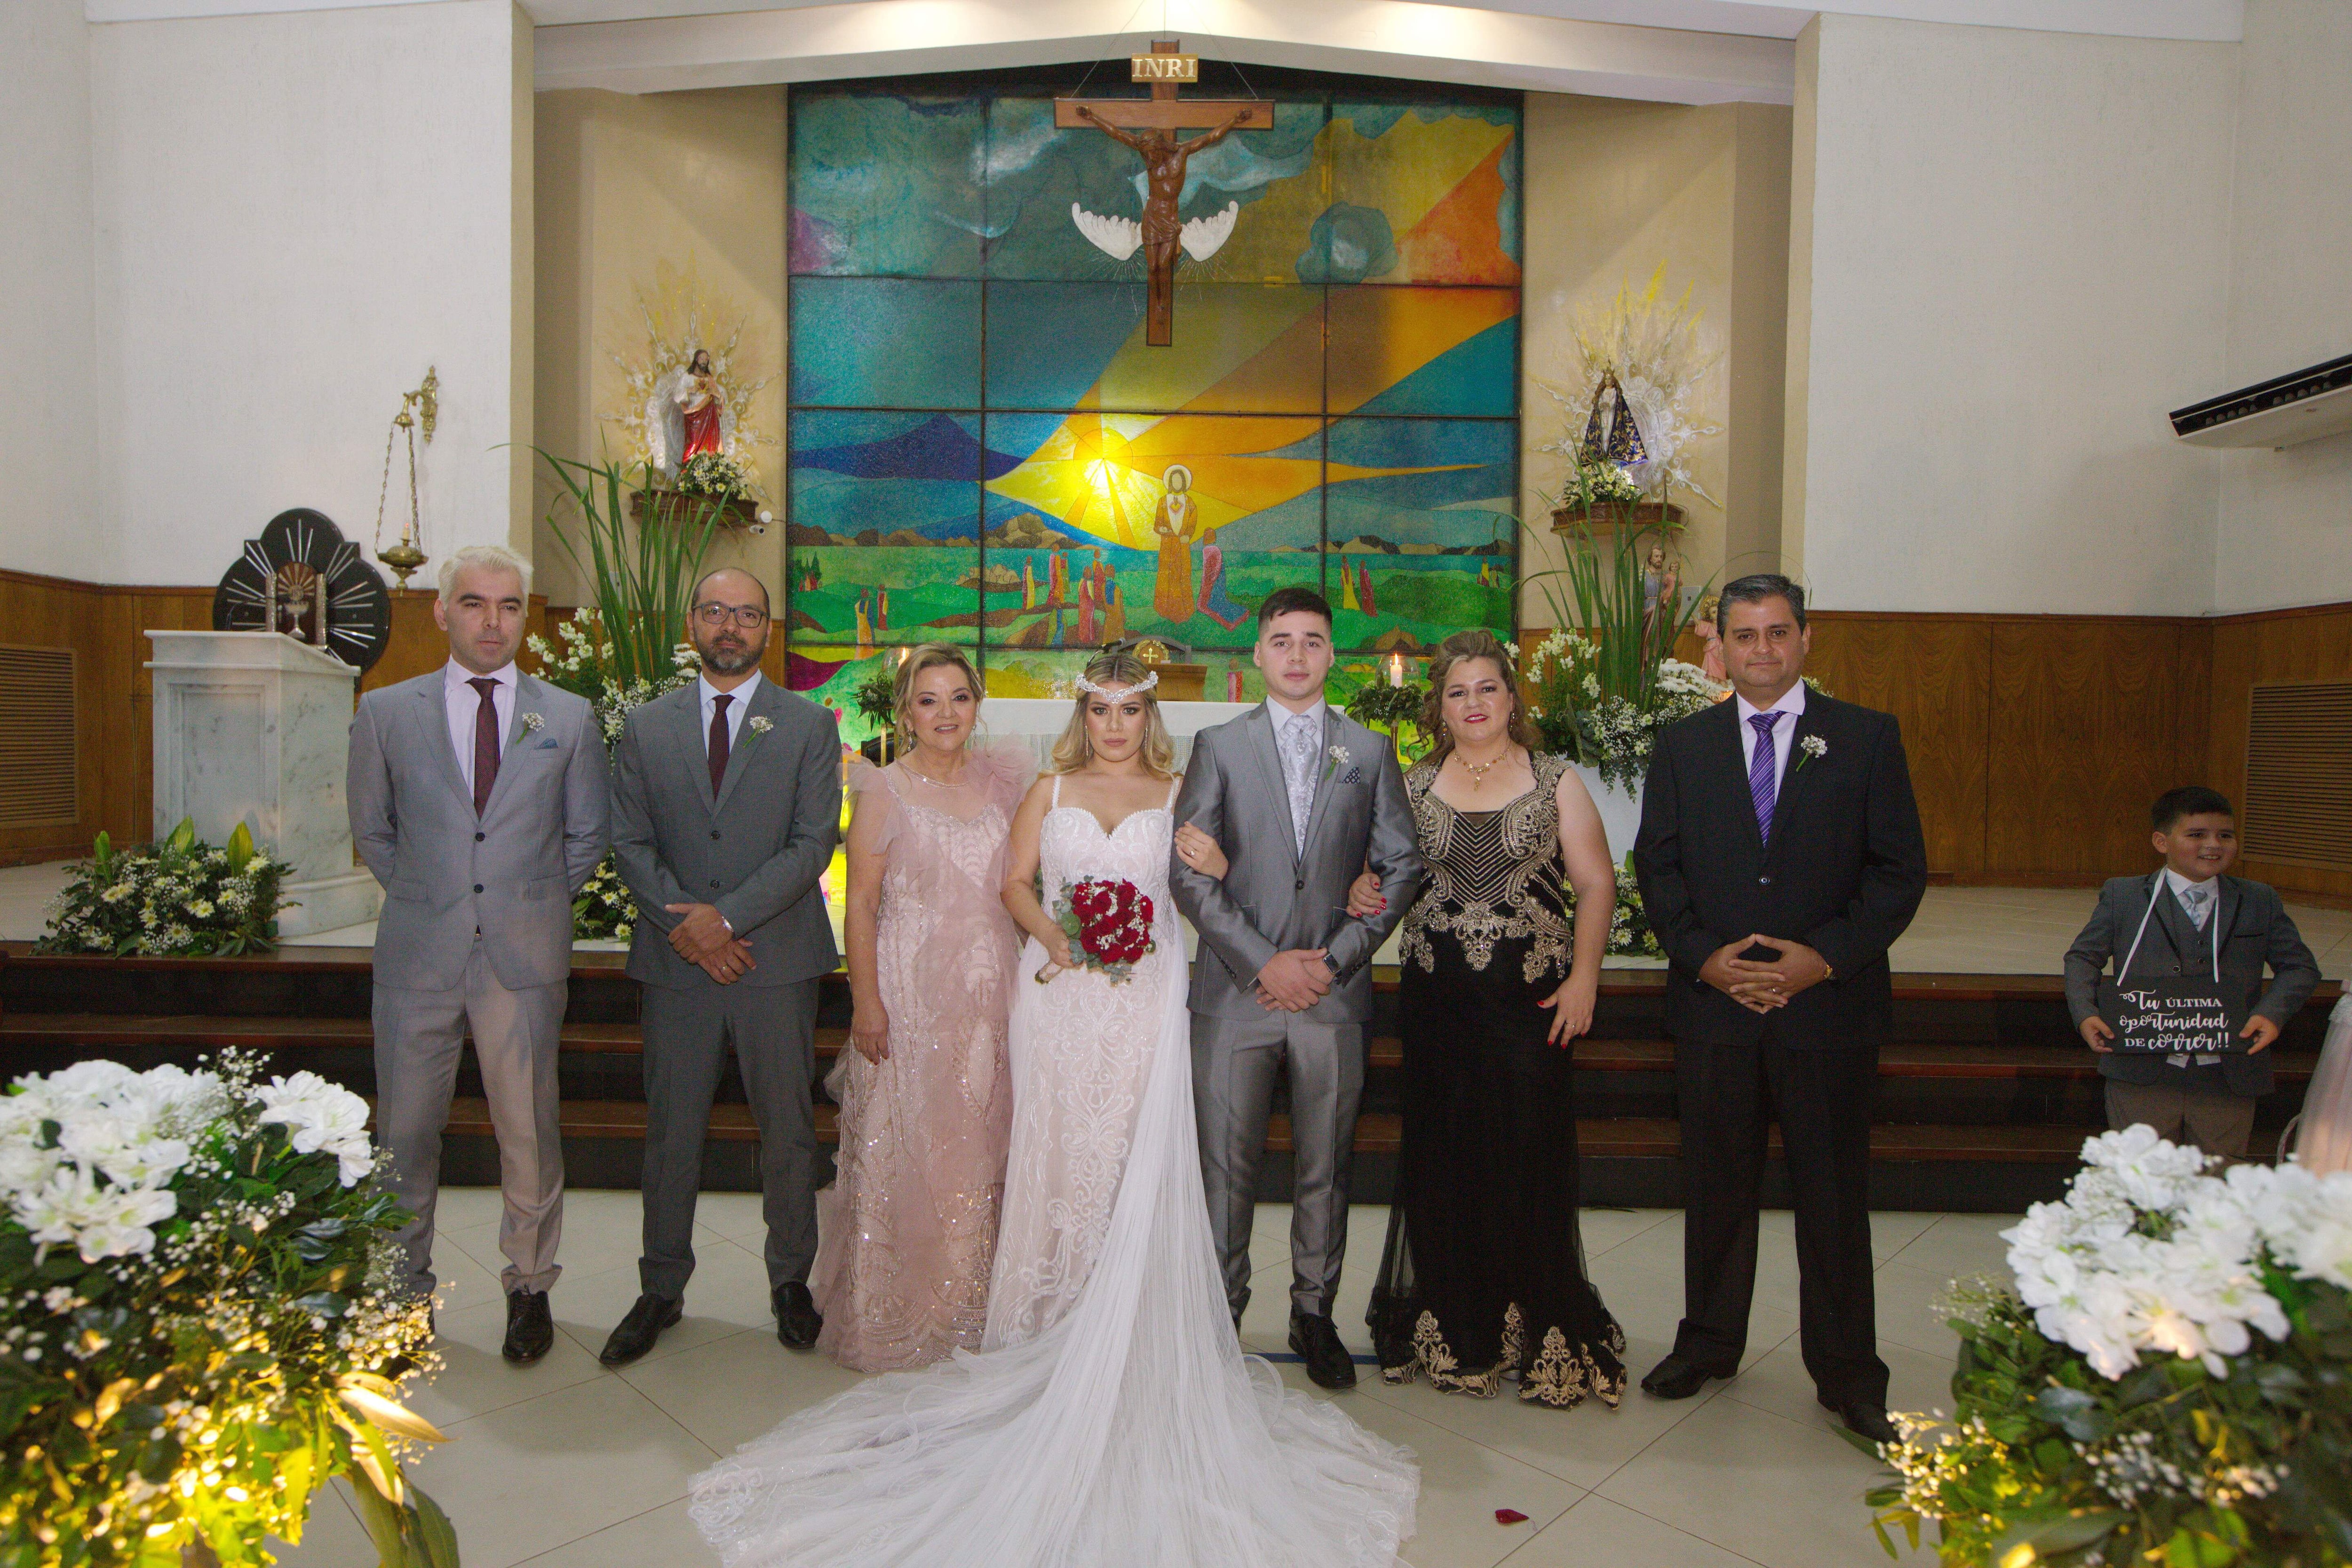 Los novios y sus padrinos Aníbal Rivas, José Rivas, Blanca Larrosa Acosta; Jenny Mereles Coronel y Bernardo Ojeda Arrúa.